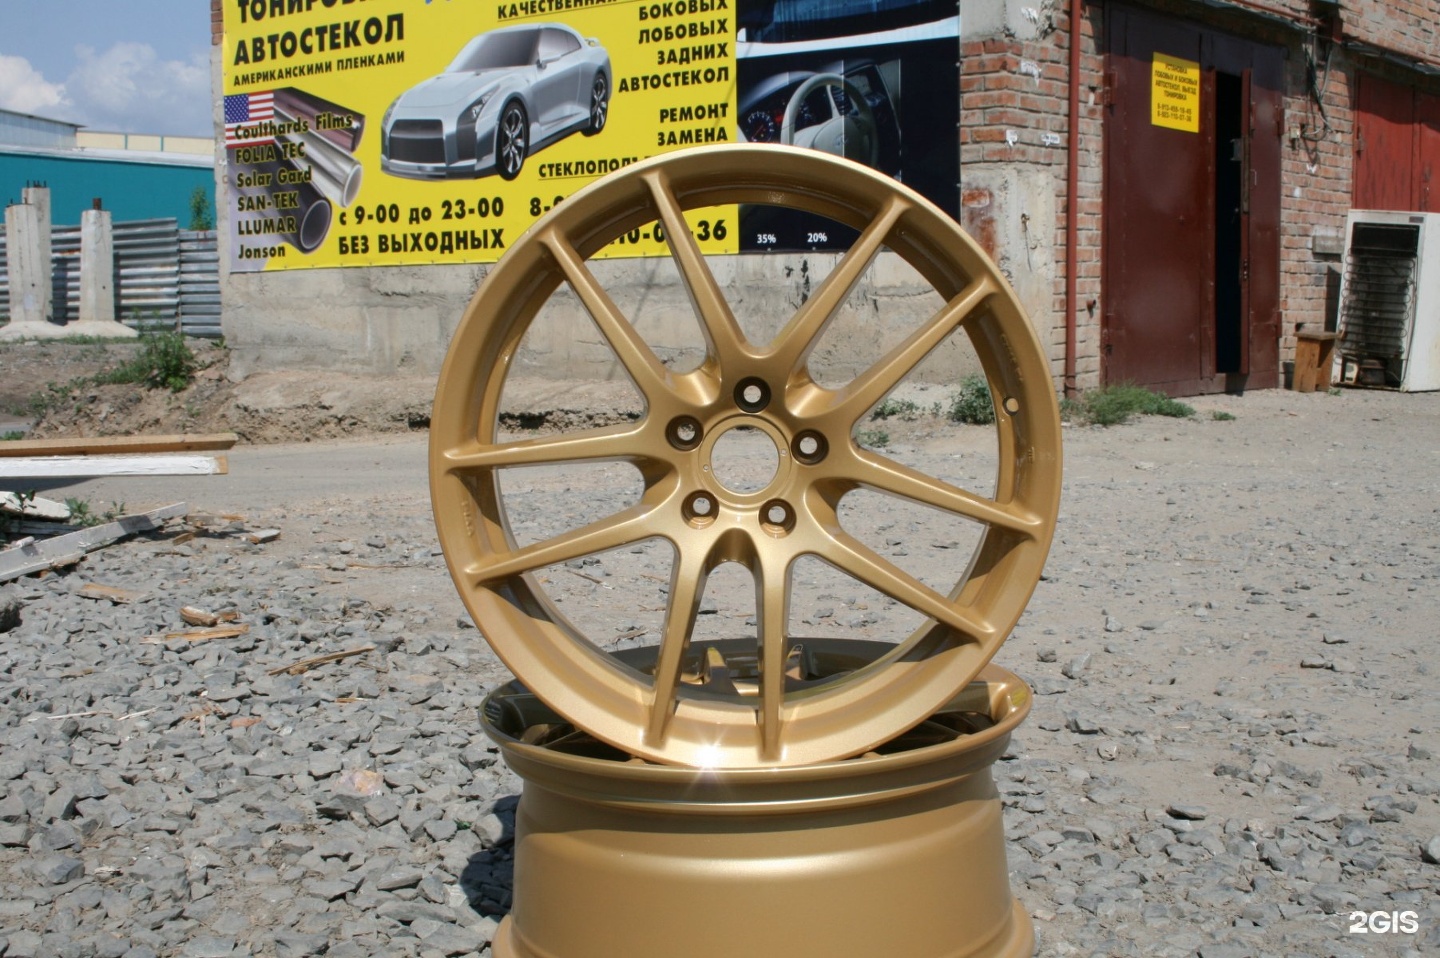 Колесо новосибирск шины цены 15. Реклама по реставрации дисков. Биг Вилс Новосибирск колеса.